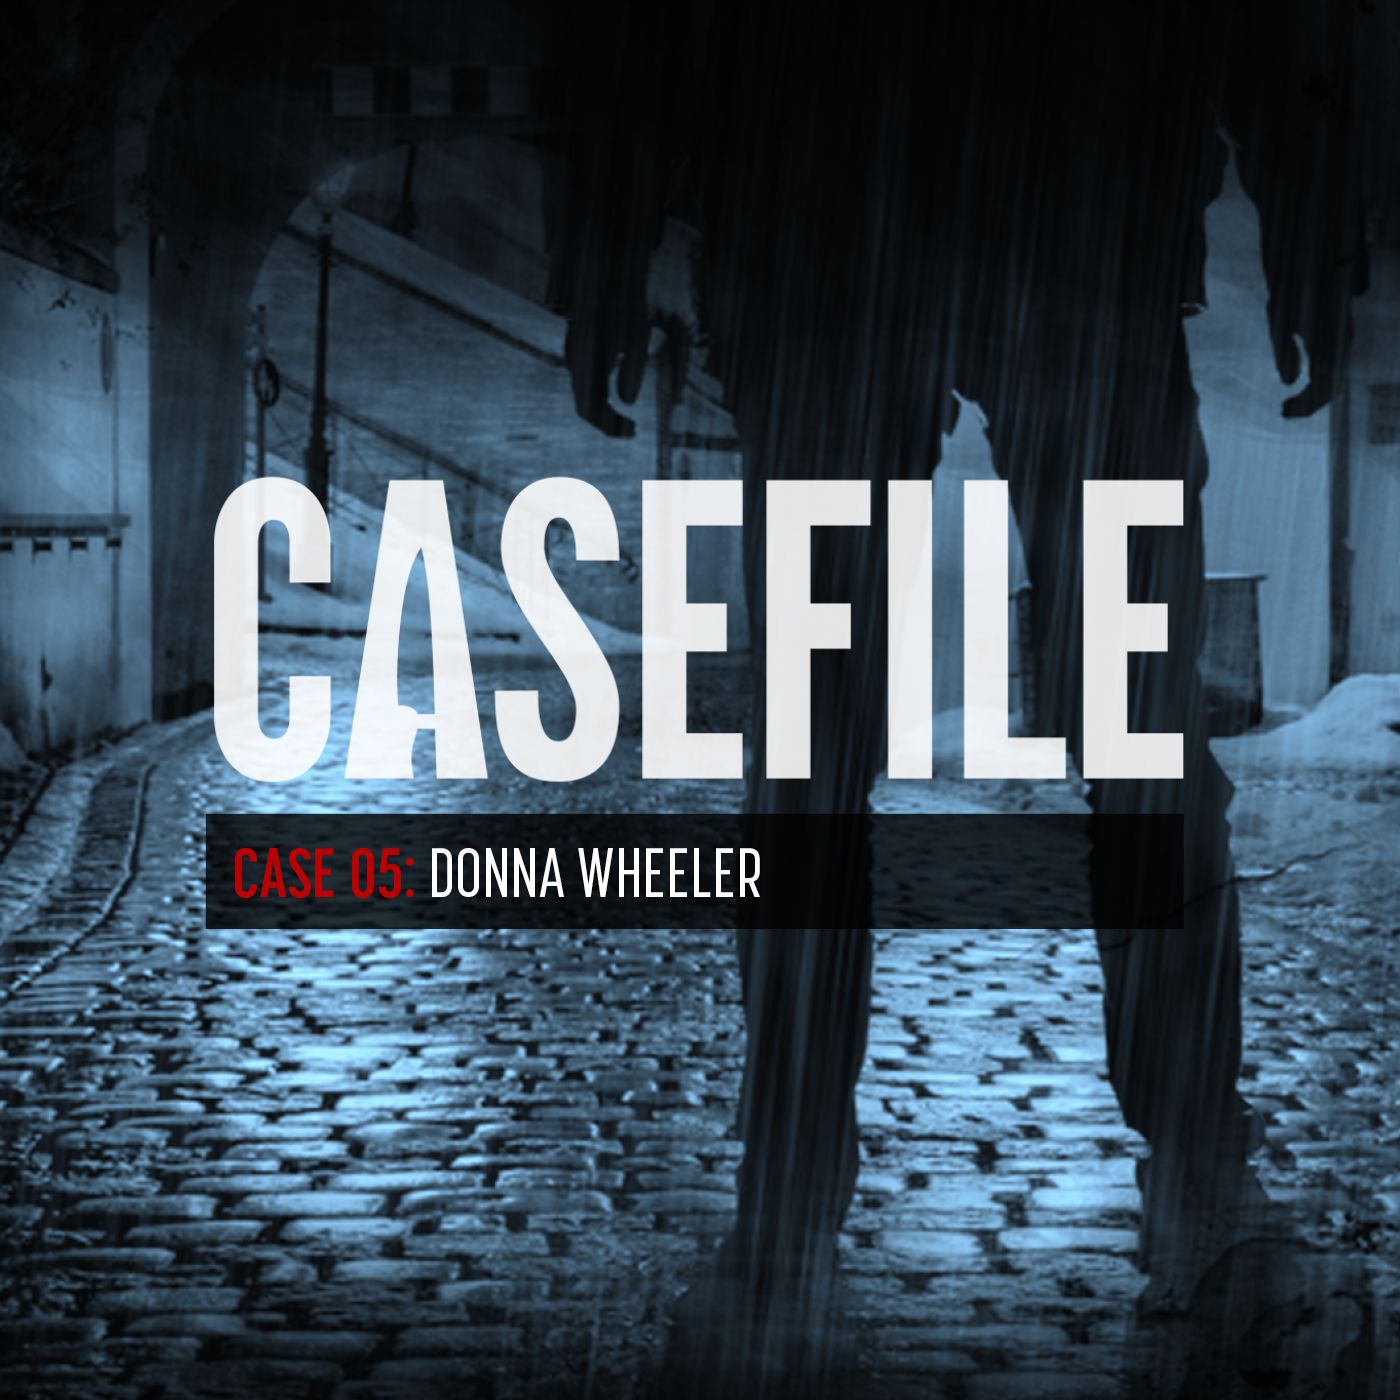 Case 05: Donna Wheeler